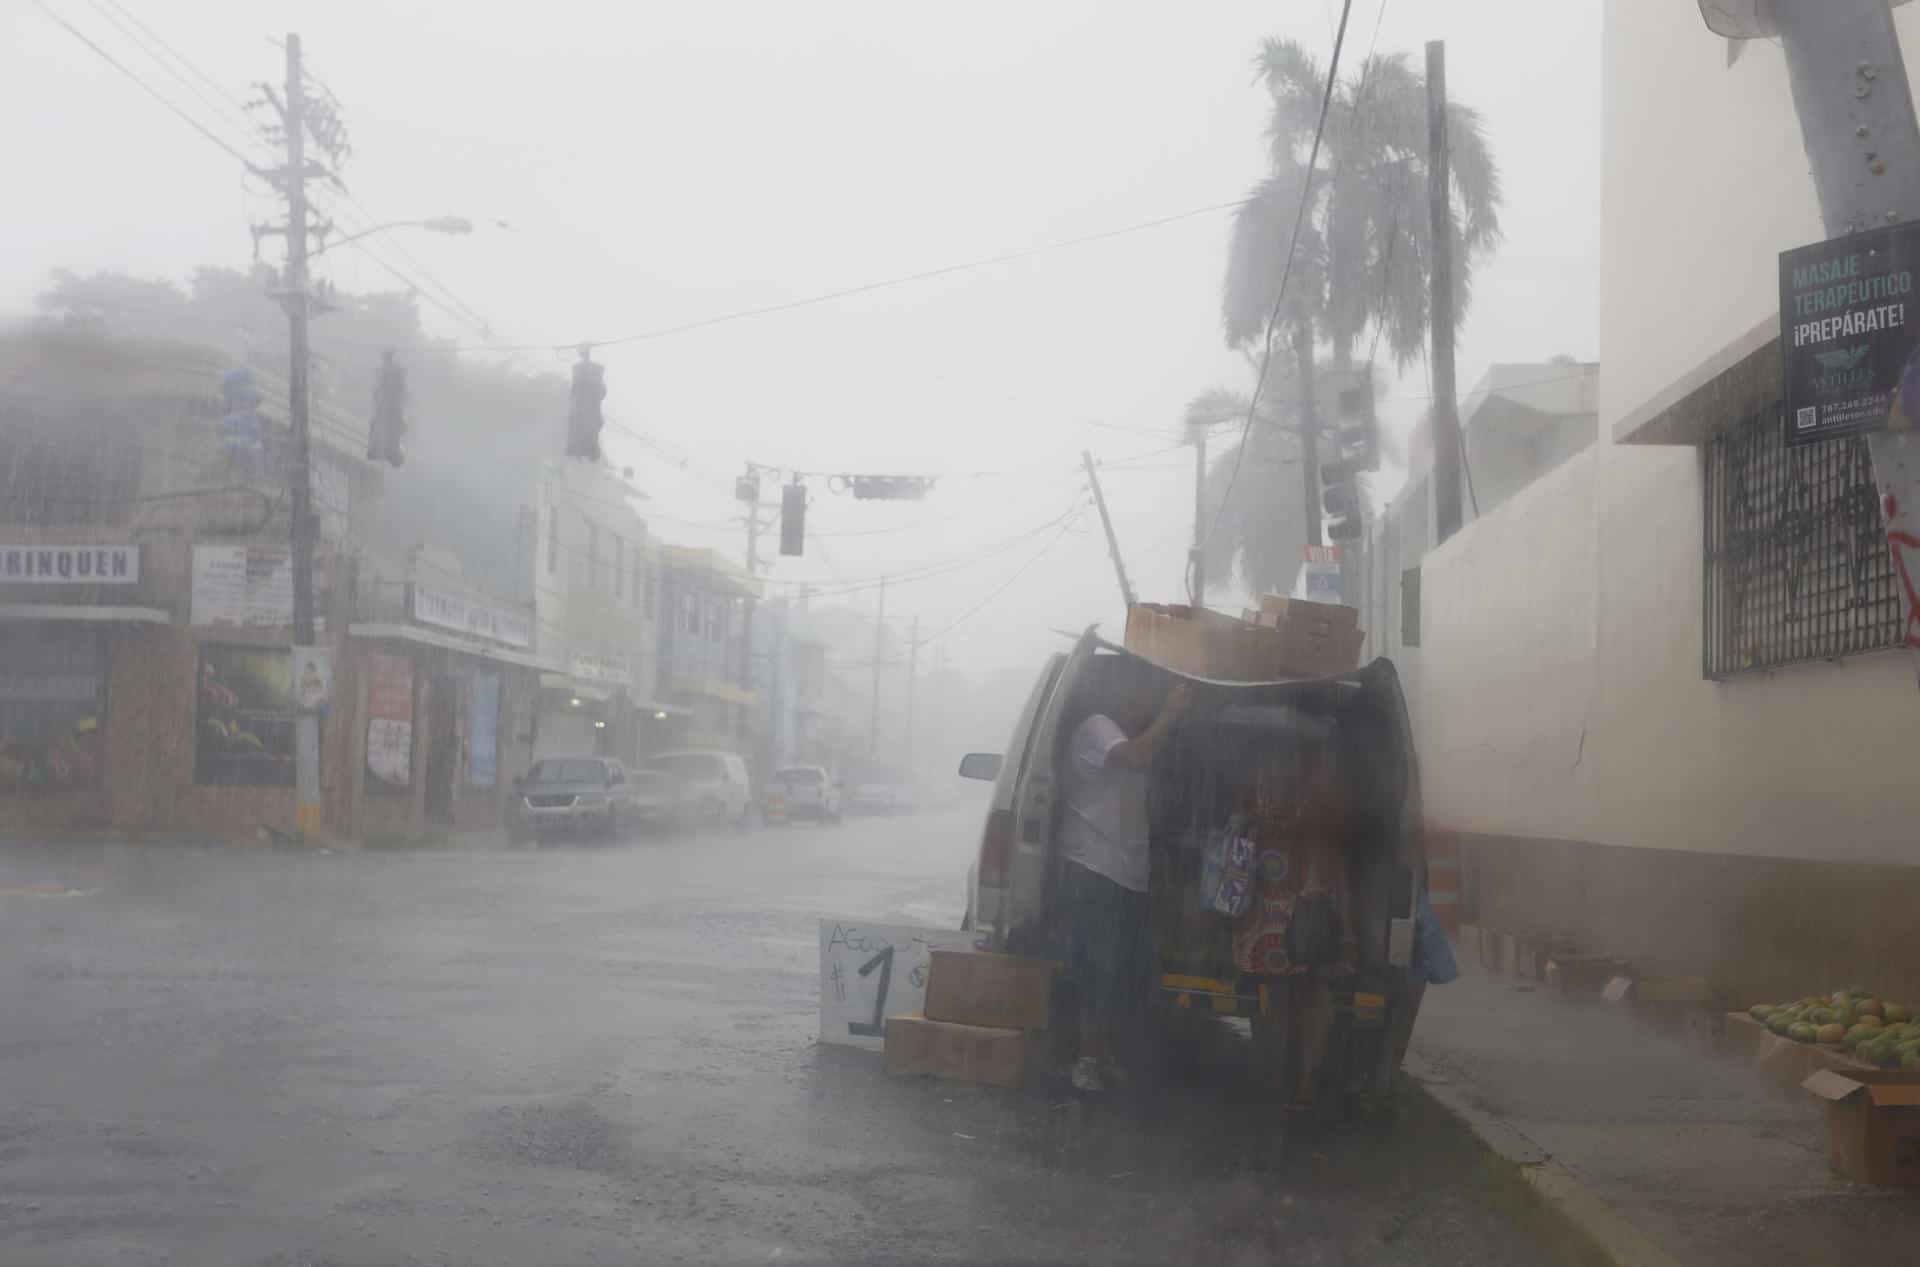 Declaran bajo alerta de inundaciones repentinas todo el norte de Puerto Rico